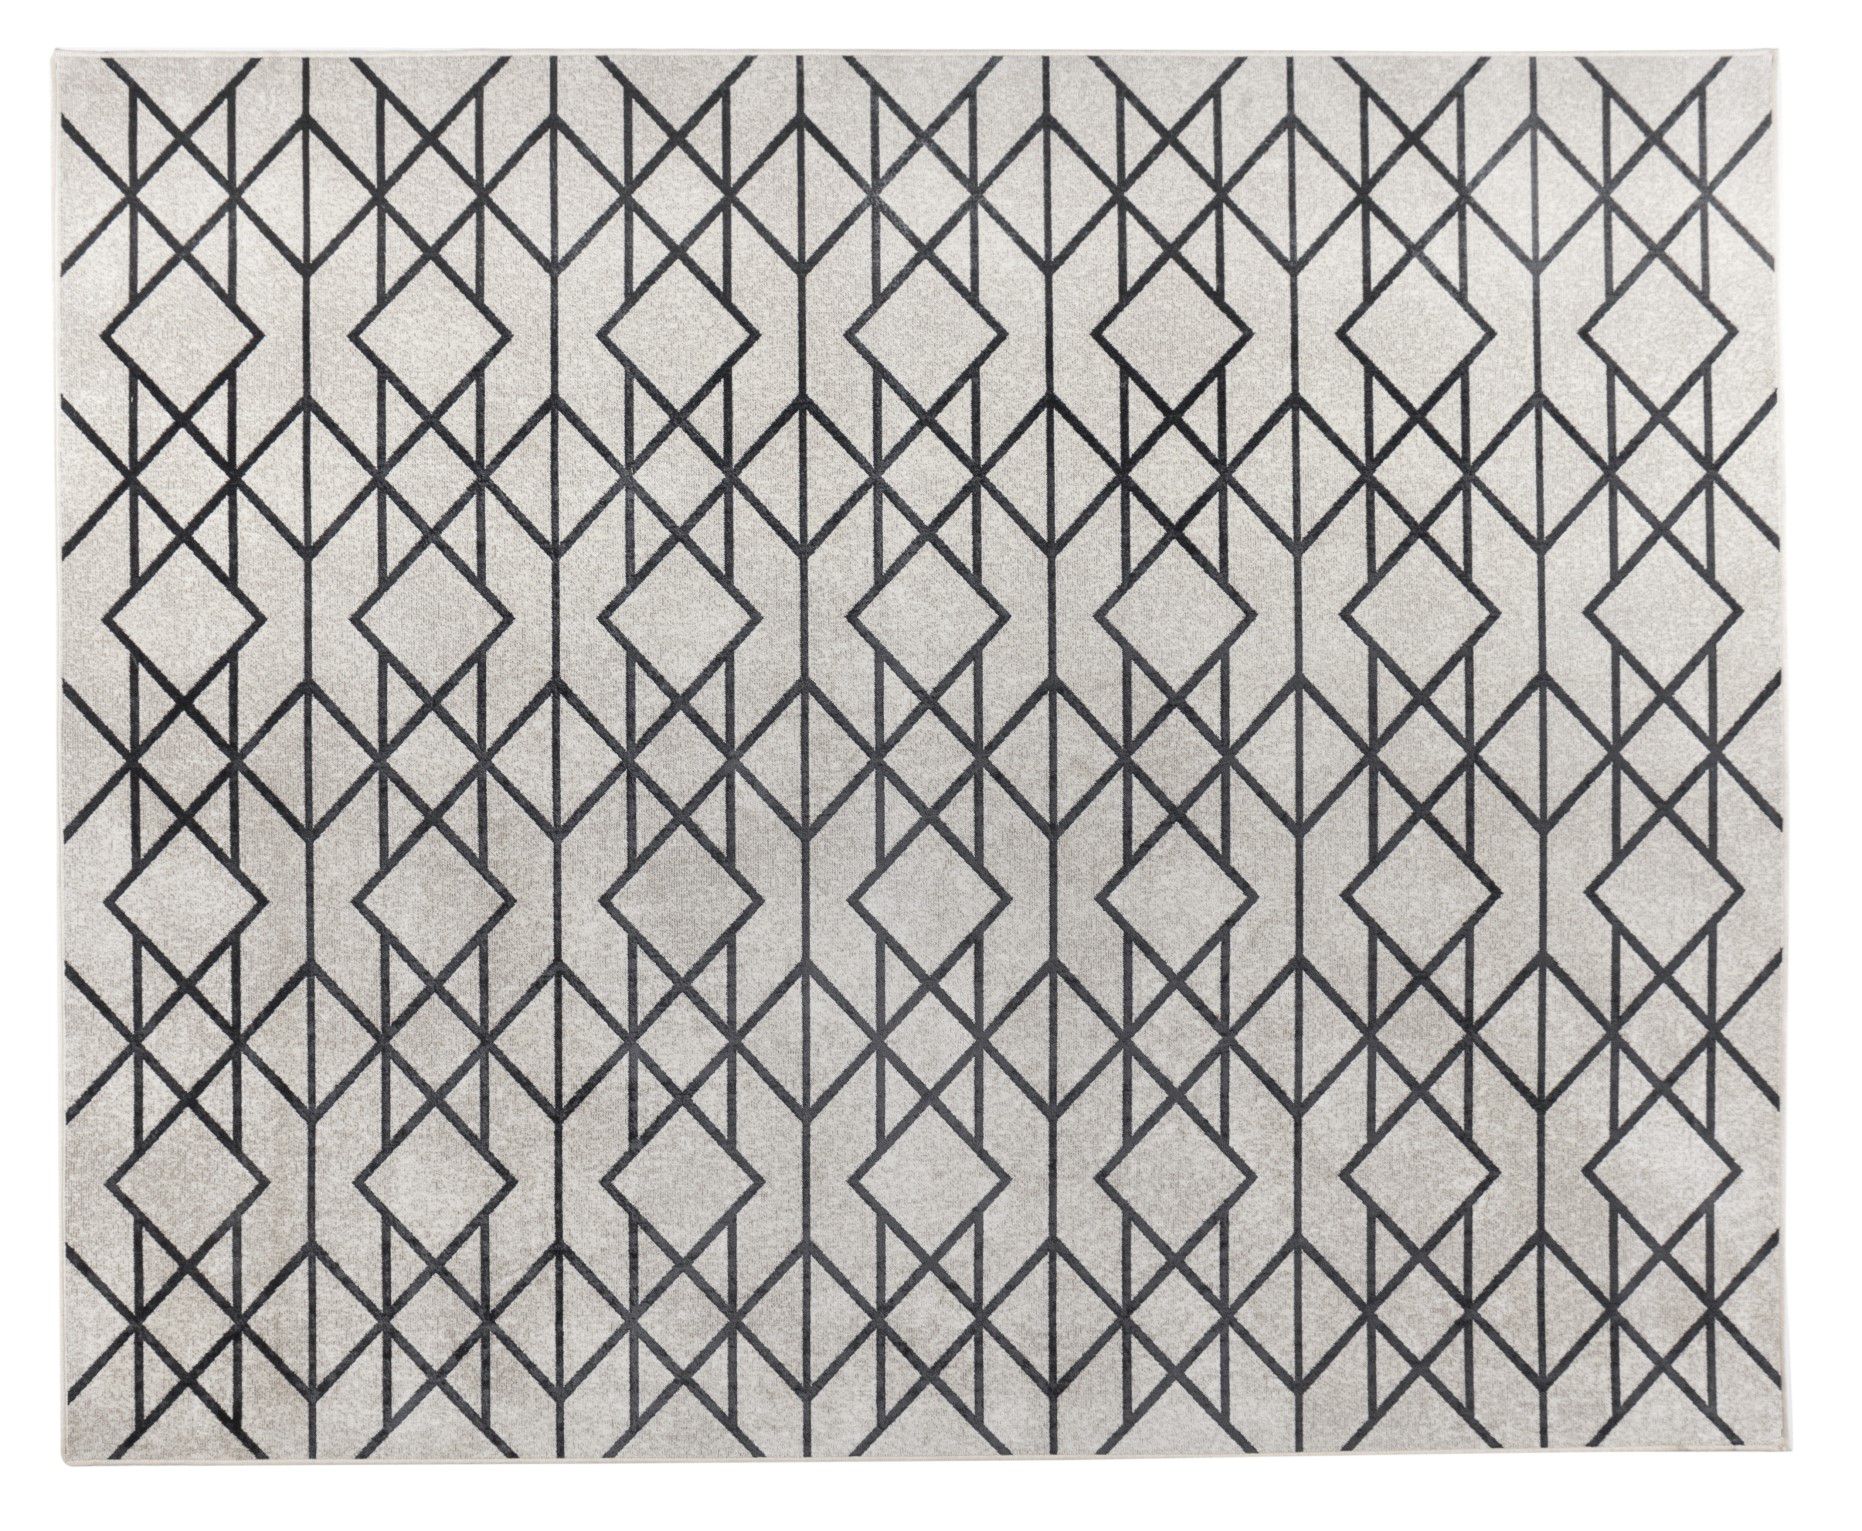 Tapete Belga Corttex Geométrico Bege e Preto 2,00x2,50 Bela 121A - Viivatex  - Site de tecidos para sofá, cortinas, papel de parede e móveis